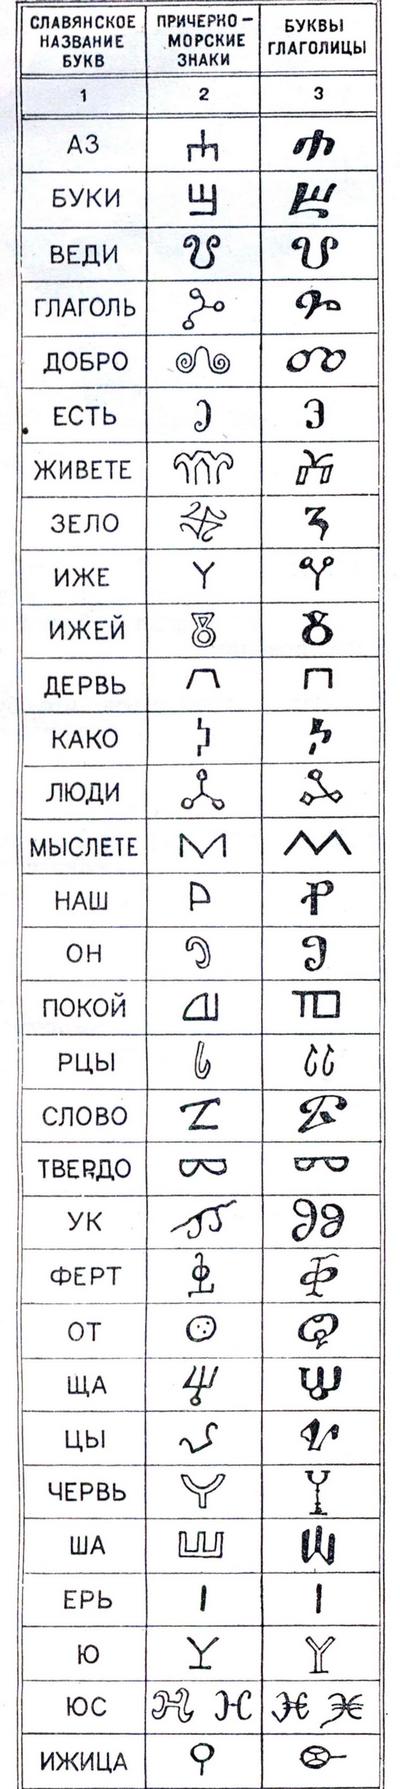 Історія руської азбуки